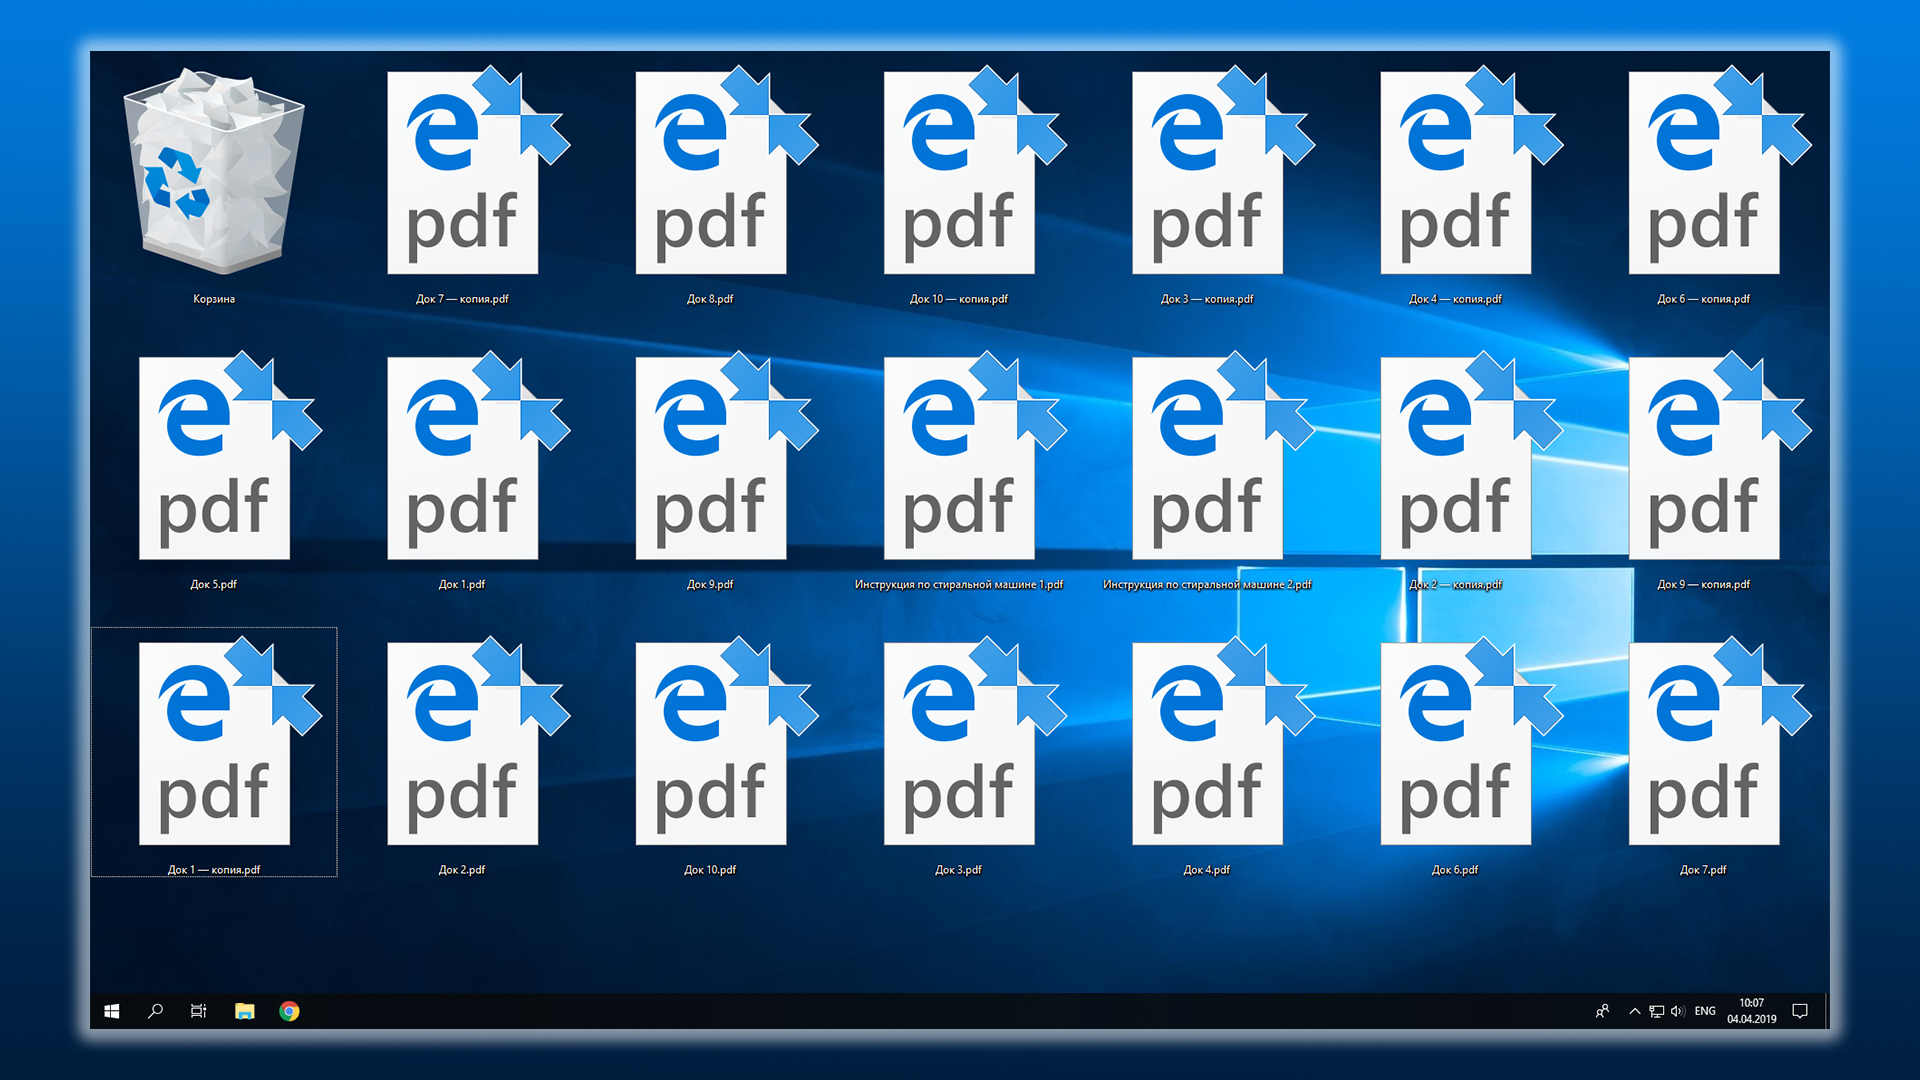 Иллюстрация к статье: рабочий стол Windows с файлами с отображением на них синих стрелочек